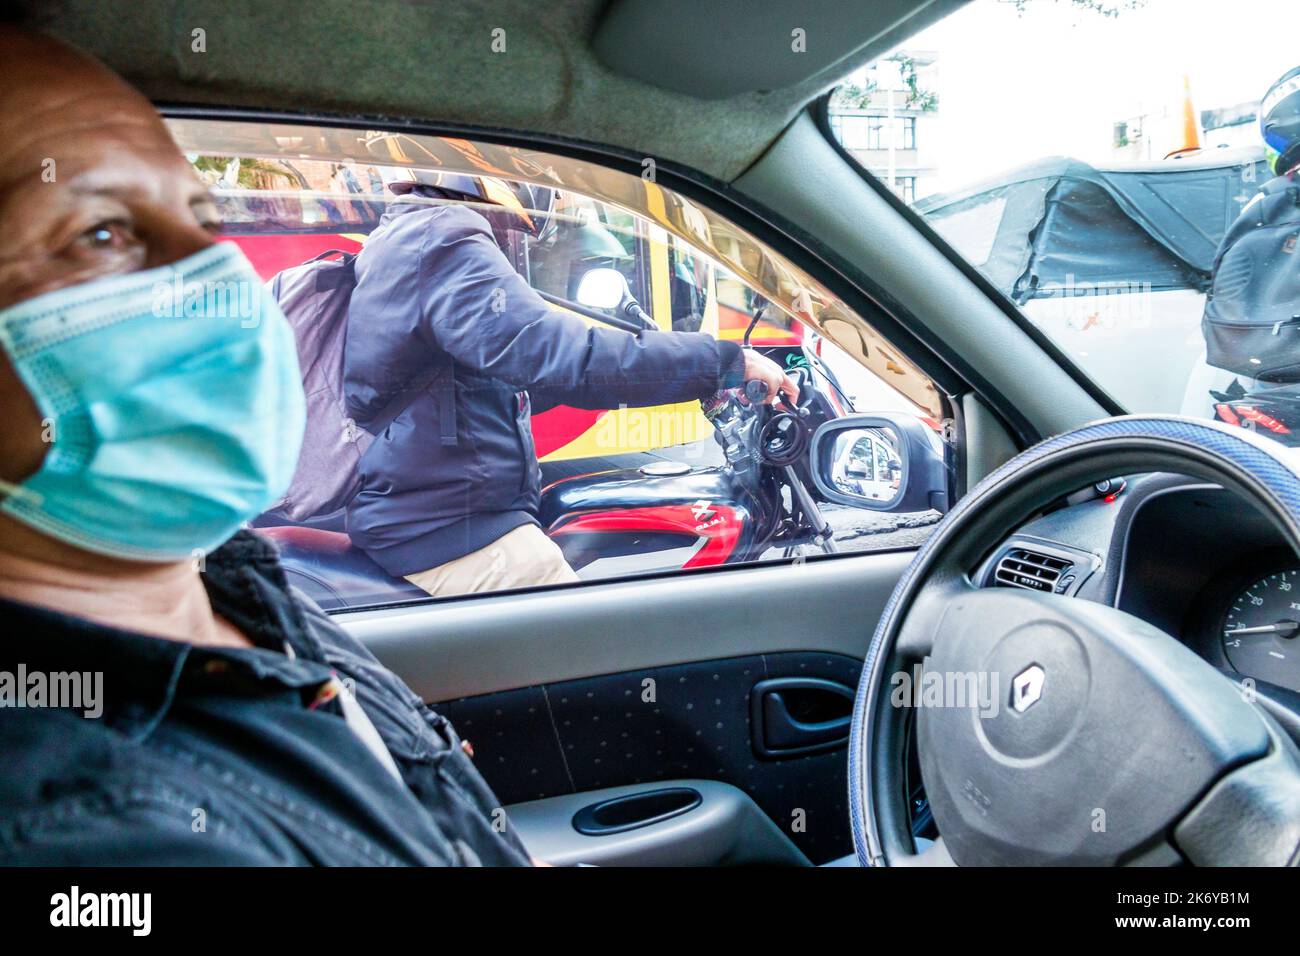 Bogota Colombia, conducente Uber, uomo uomini uomini adulti, interni auto veicolo, lavoratori lavoro lavoro lavoro lavoro lavoro lavoro lavoro lavoro lavoro, faccia Foto Stock